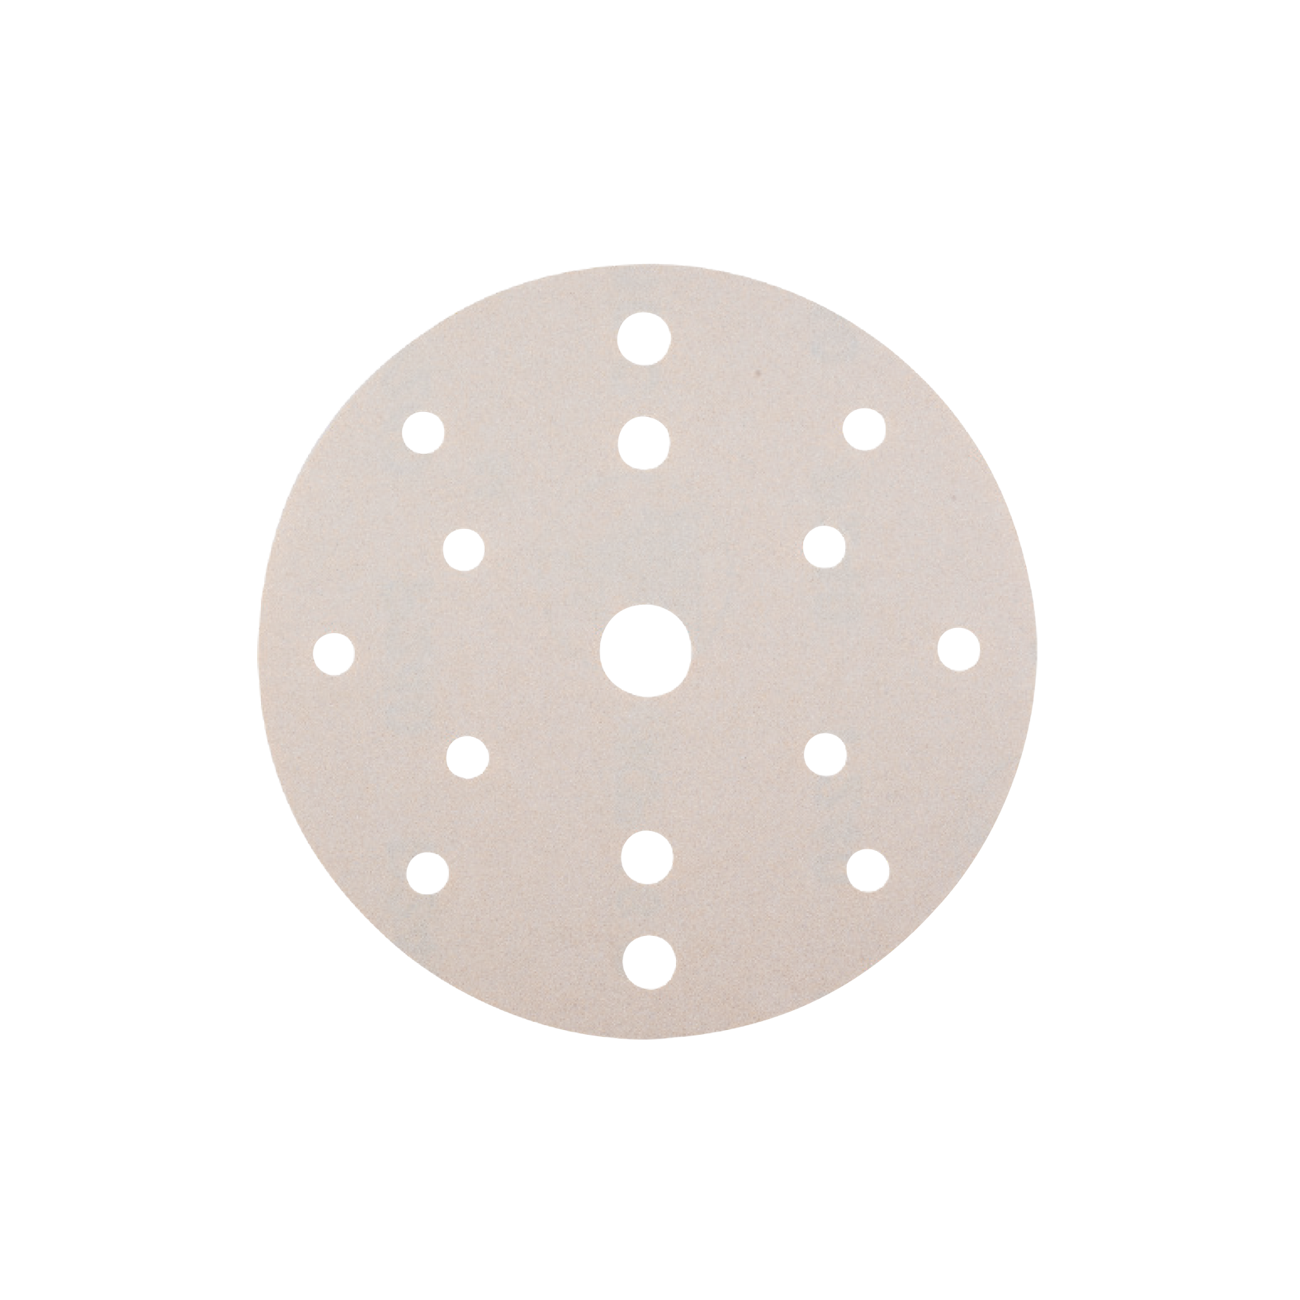 Disc din Hartie Abrazive pe Suport Velcro din Panza pentru Lemn - Skp Velcro, R 150, 8 + 6 + 1 Perforatii, Gr. 240